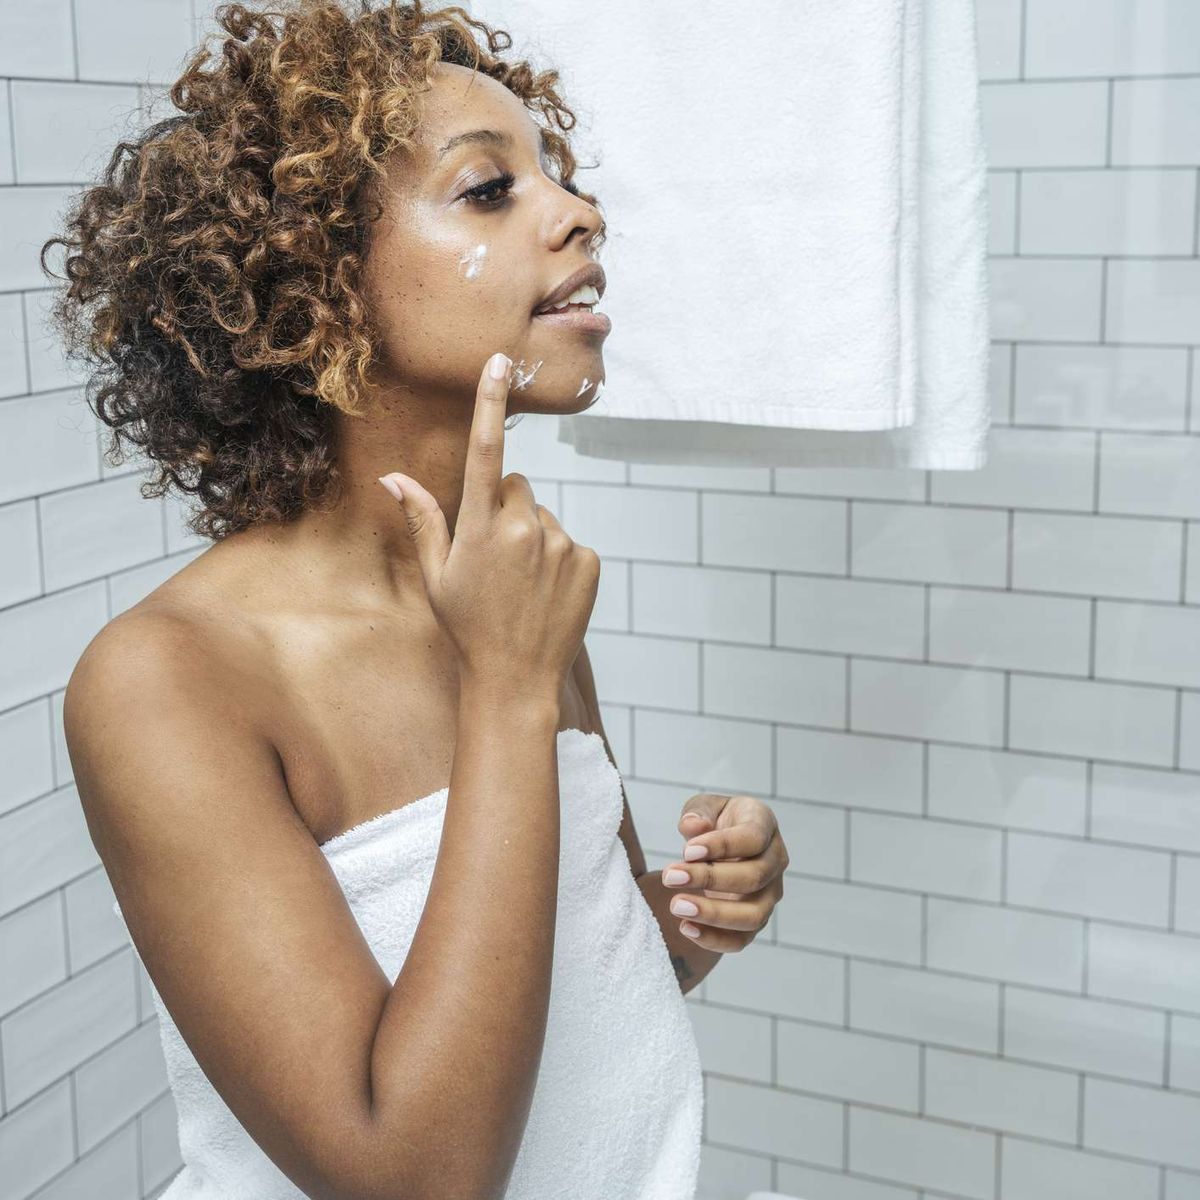 אישה מורחת קרם פנים בחדר אמבטיה לבן עם אריחים